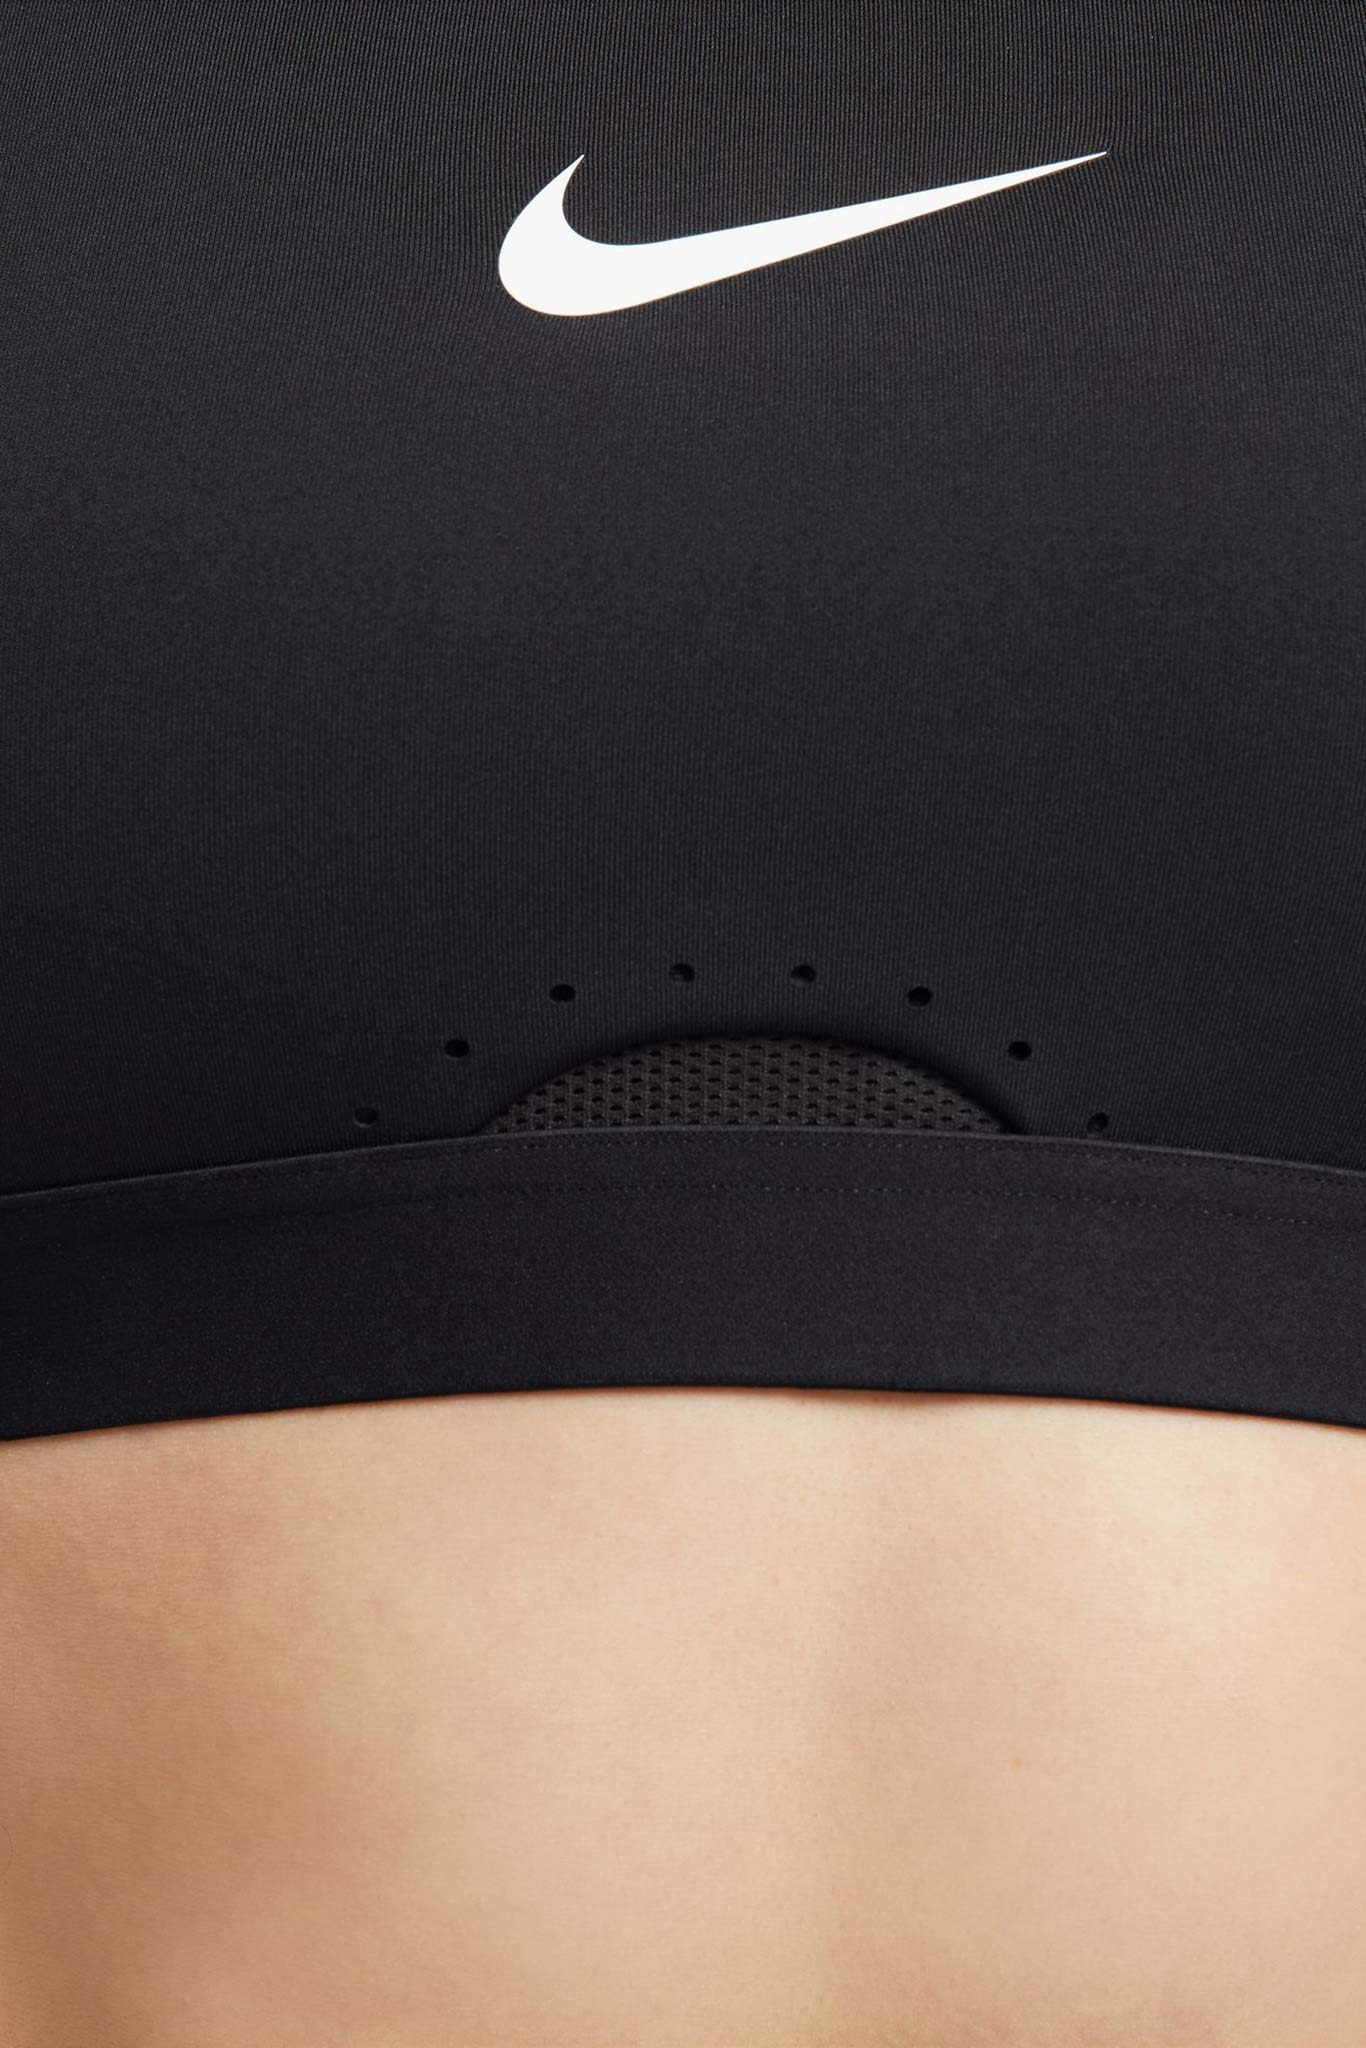 Nike Dri-Fit Sports Bra Women's Black New with Tags 2XL 979 - Locker Room  Direct